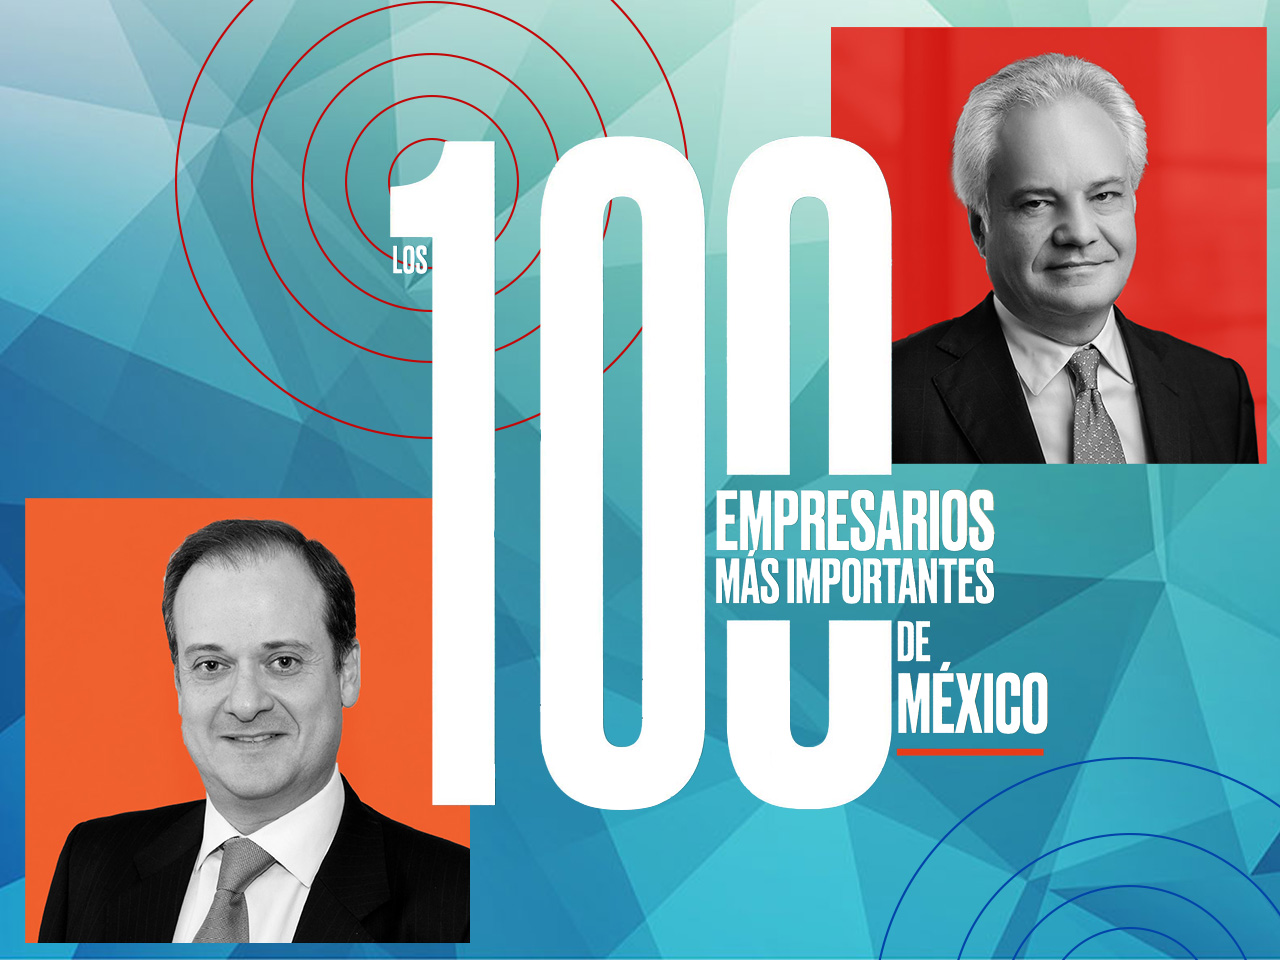 Los 100 empresarios más importantes de México